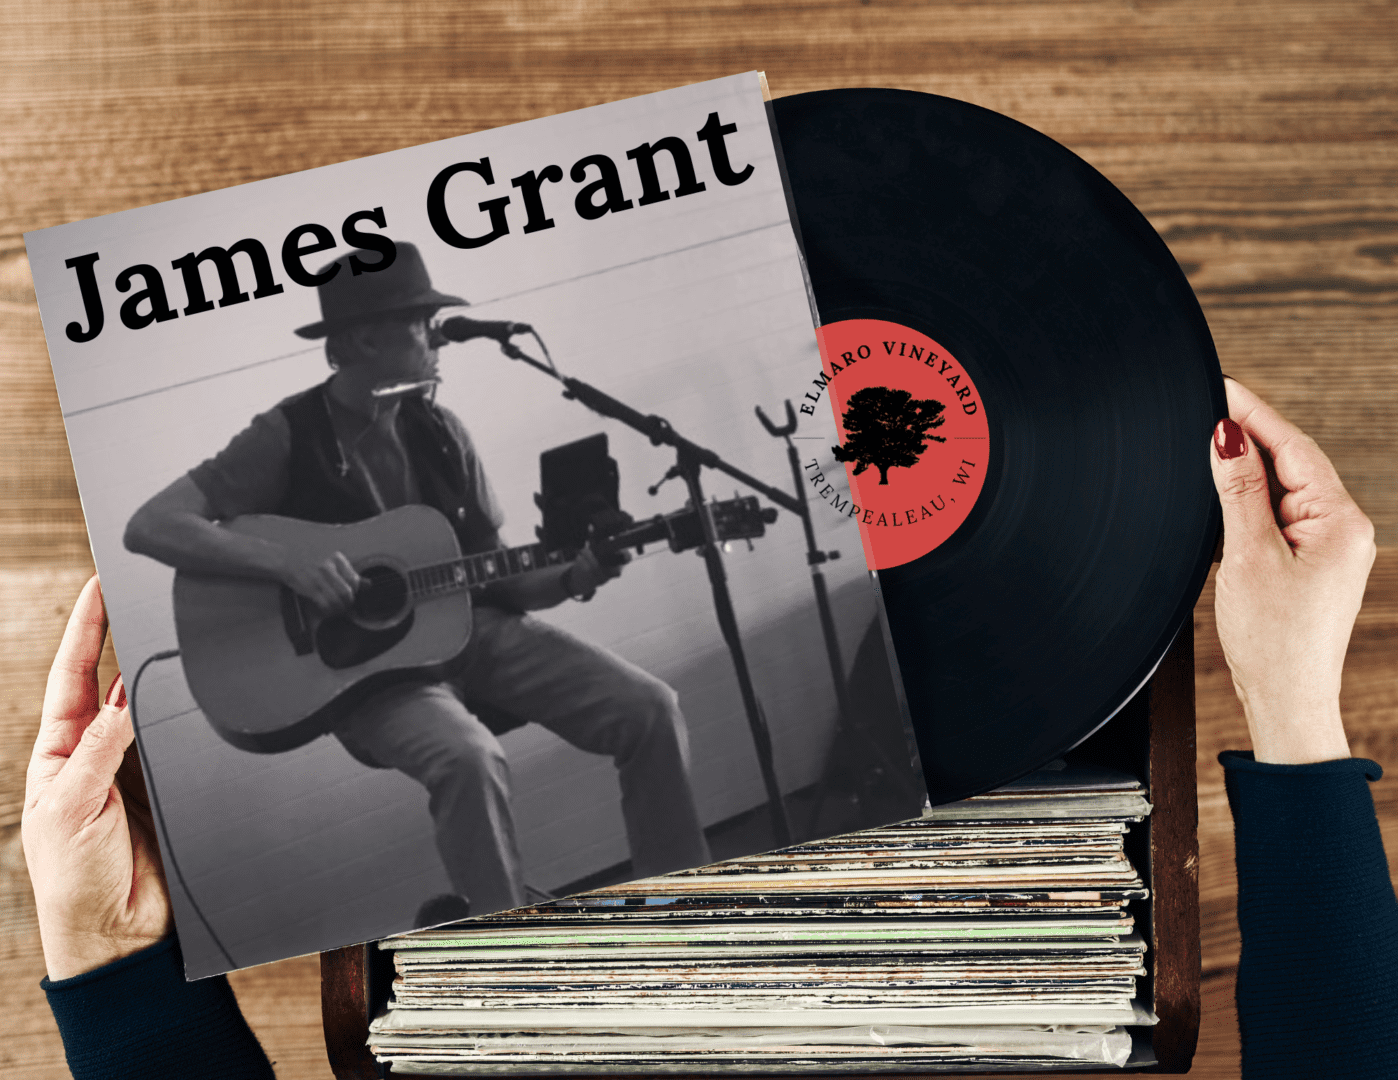 James grant album cover.